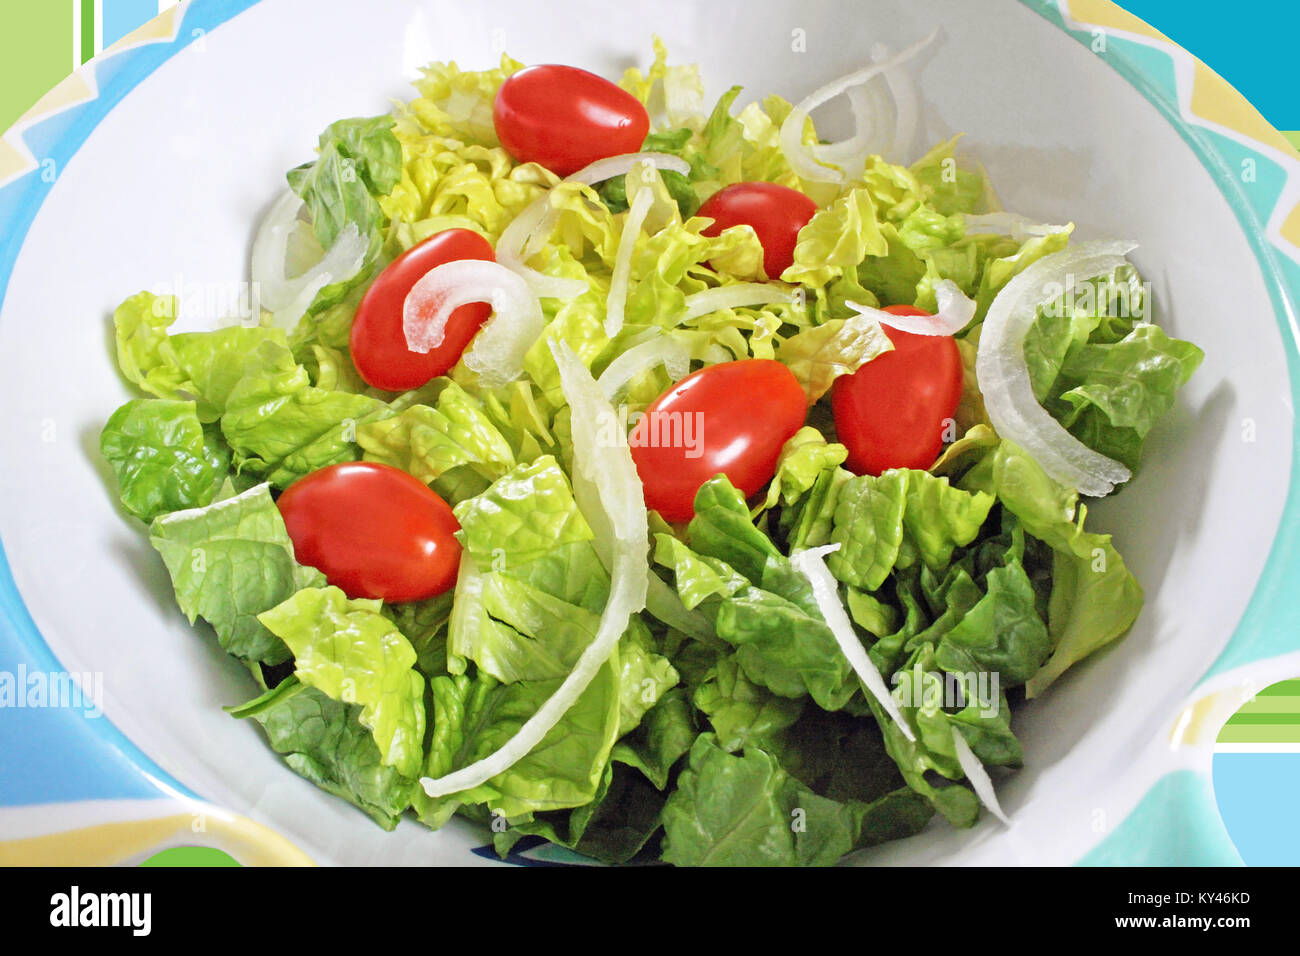 Frische gehackte Römersalat, reife Tomaten in Scheiben geschnitten und weiße Zwiebel in eine Bunte Salatschüssel Stockfoto